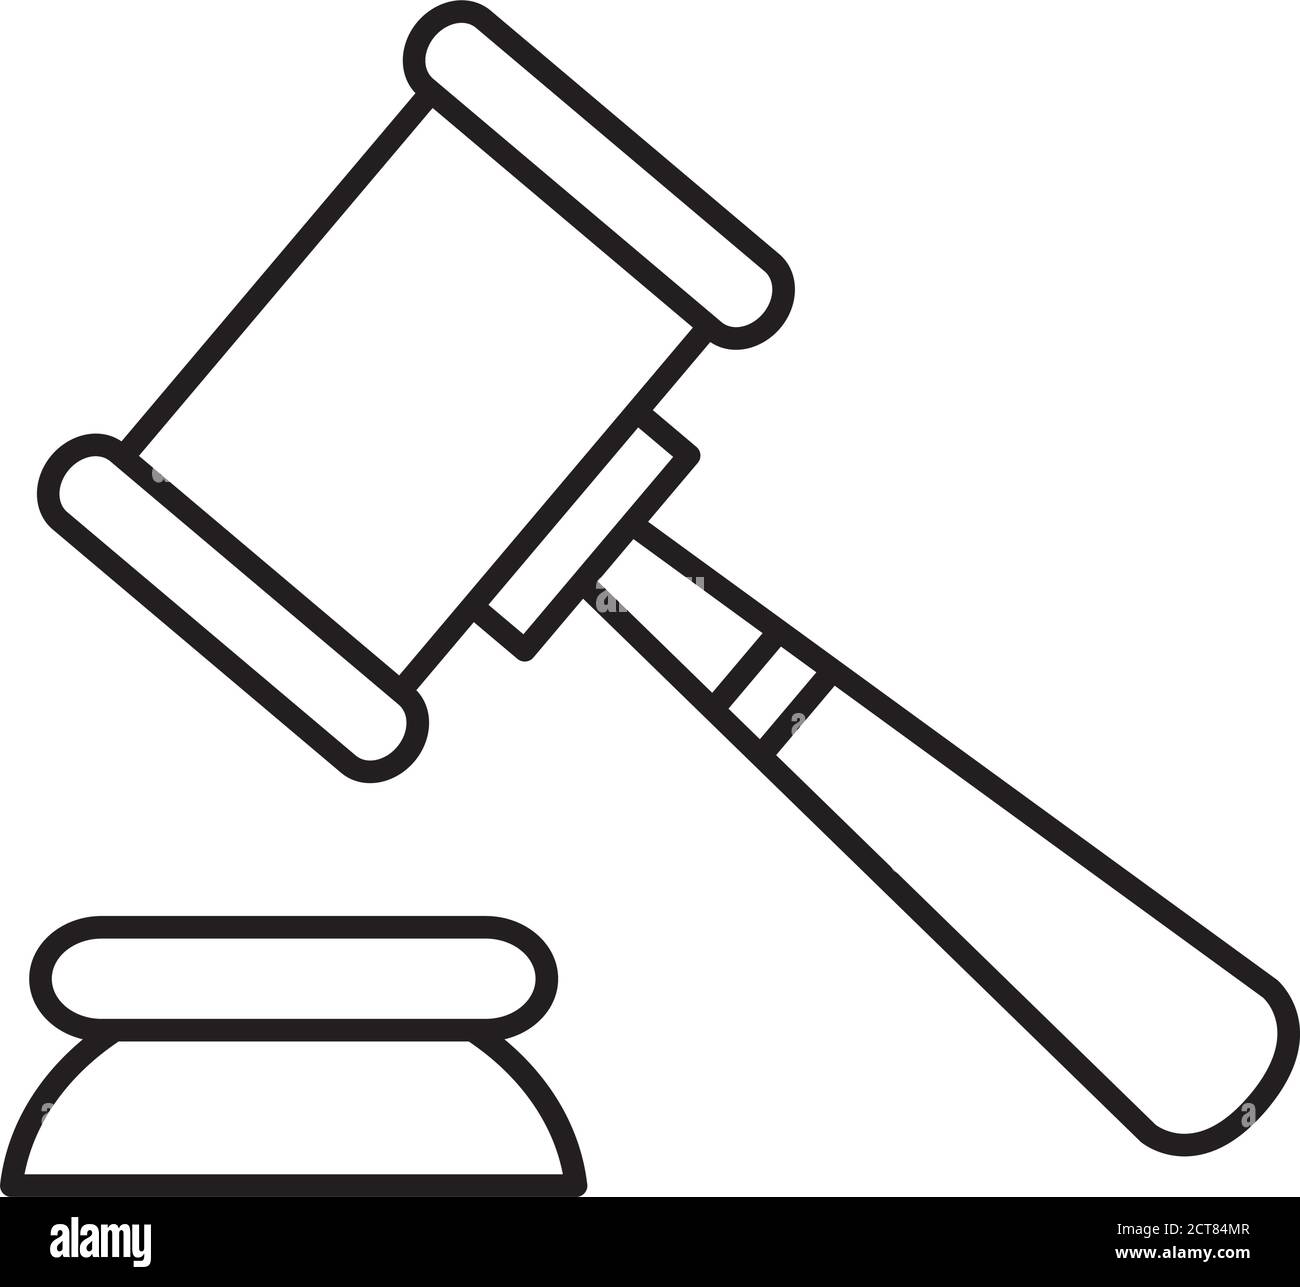 Juicio legal Imágenes de stock en blanco y negro - Página 3 - Alamy